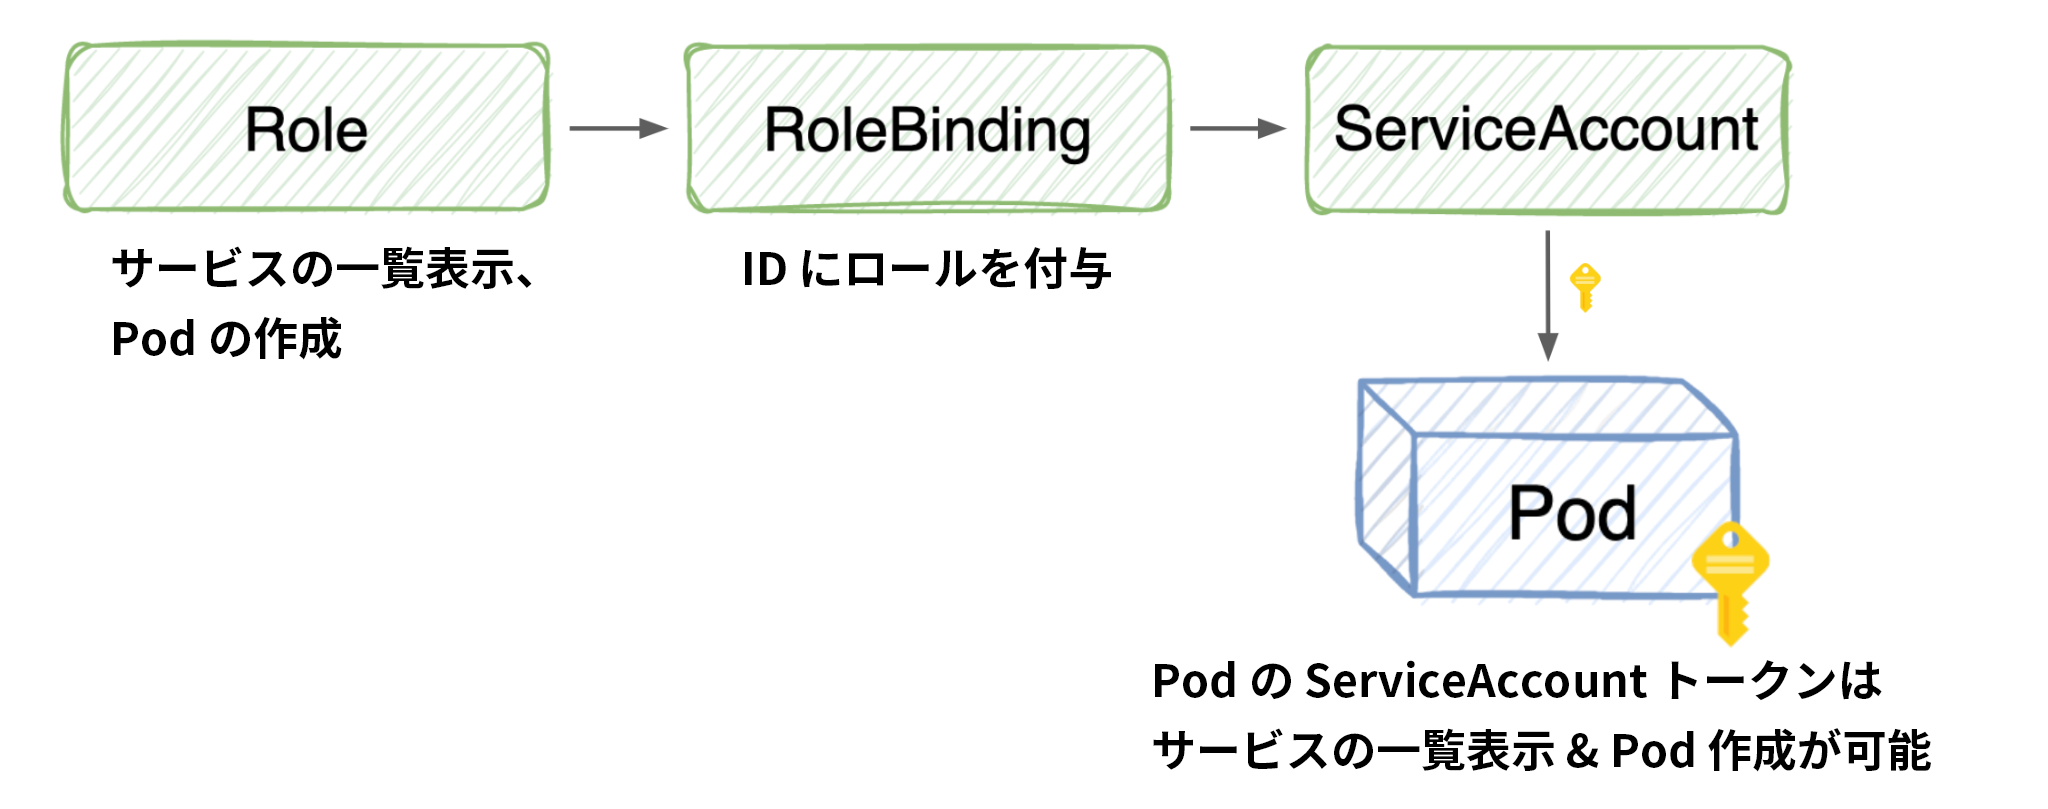 画像 3 はある Kubernetes Pod に付与された権限を示した図です。このロールは「サービスのリスト」「Pod の作成」を行います。RoleBinding は ID にロールを付与します。これでこのサービス アカウントは Pod 作成用のキーが与えられたことになります。 